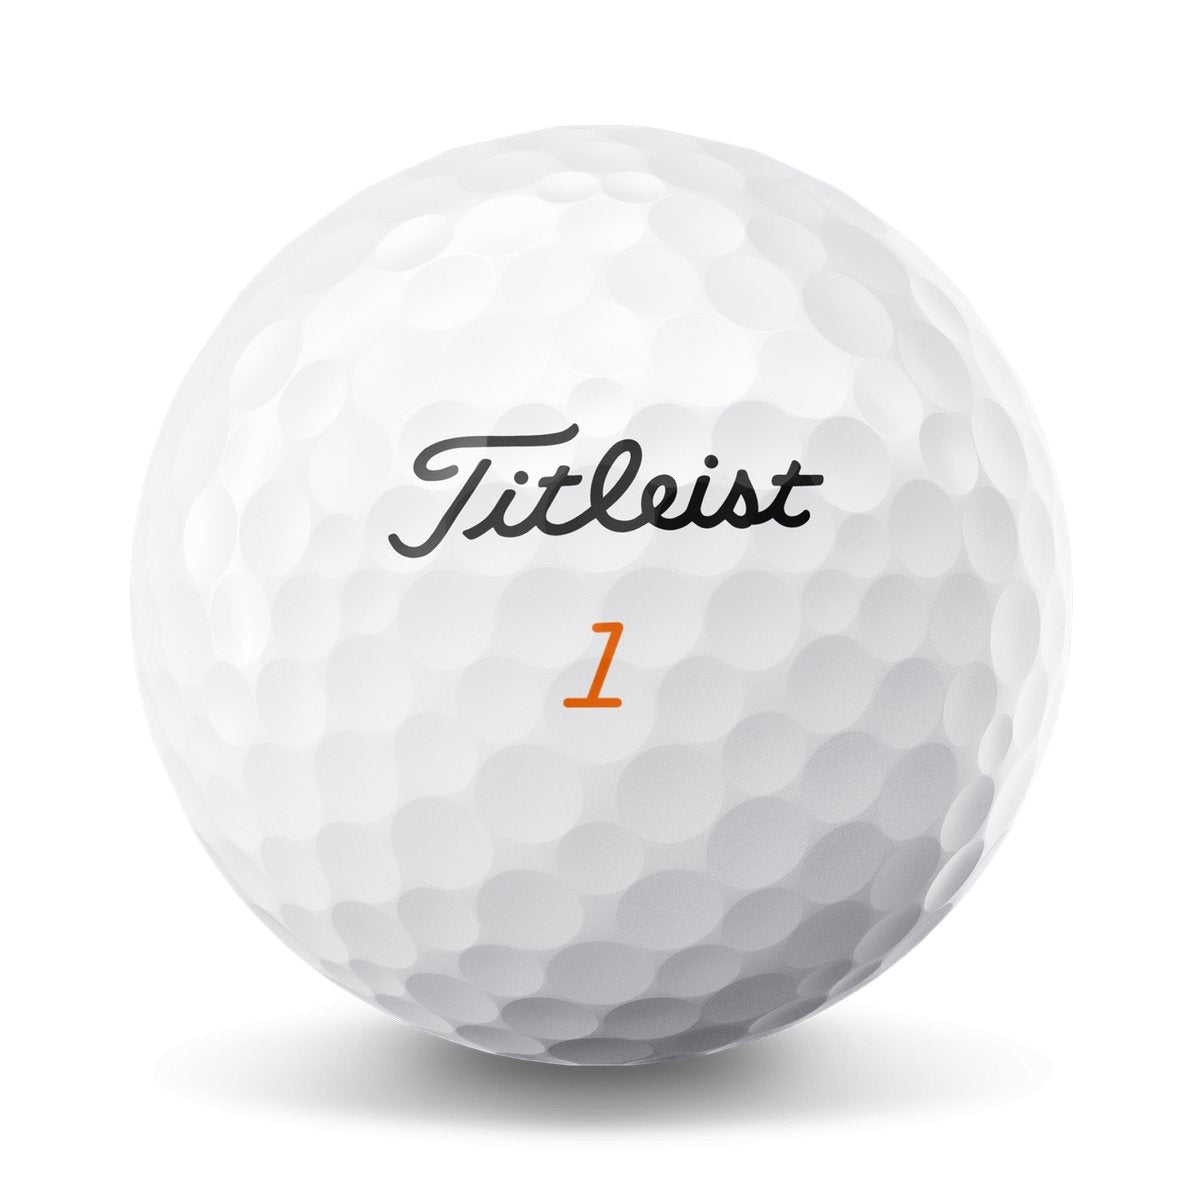 Titleist Velocity Golf Balls - Niagara Golf Warehouse TITLEIST GOLF BALLS